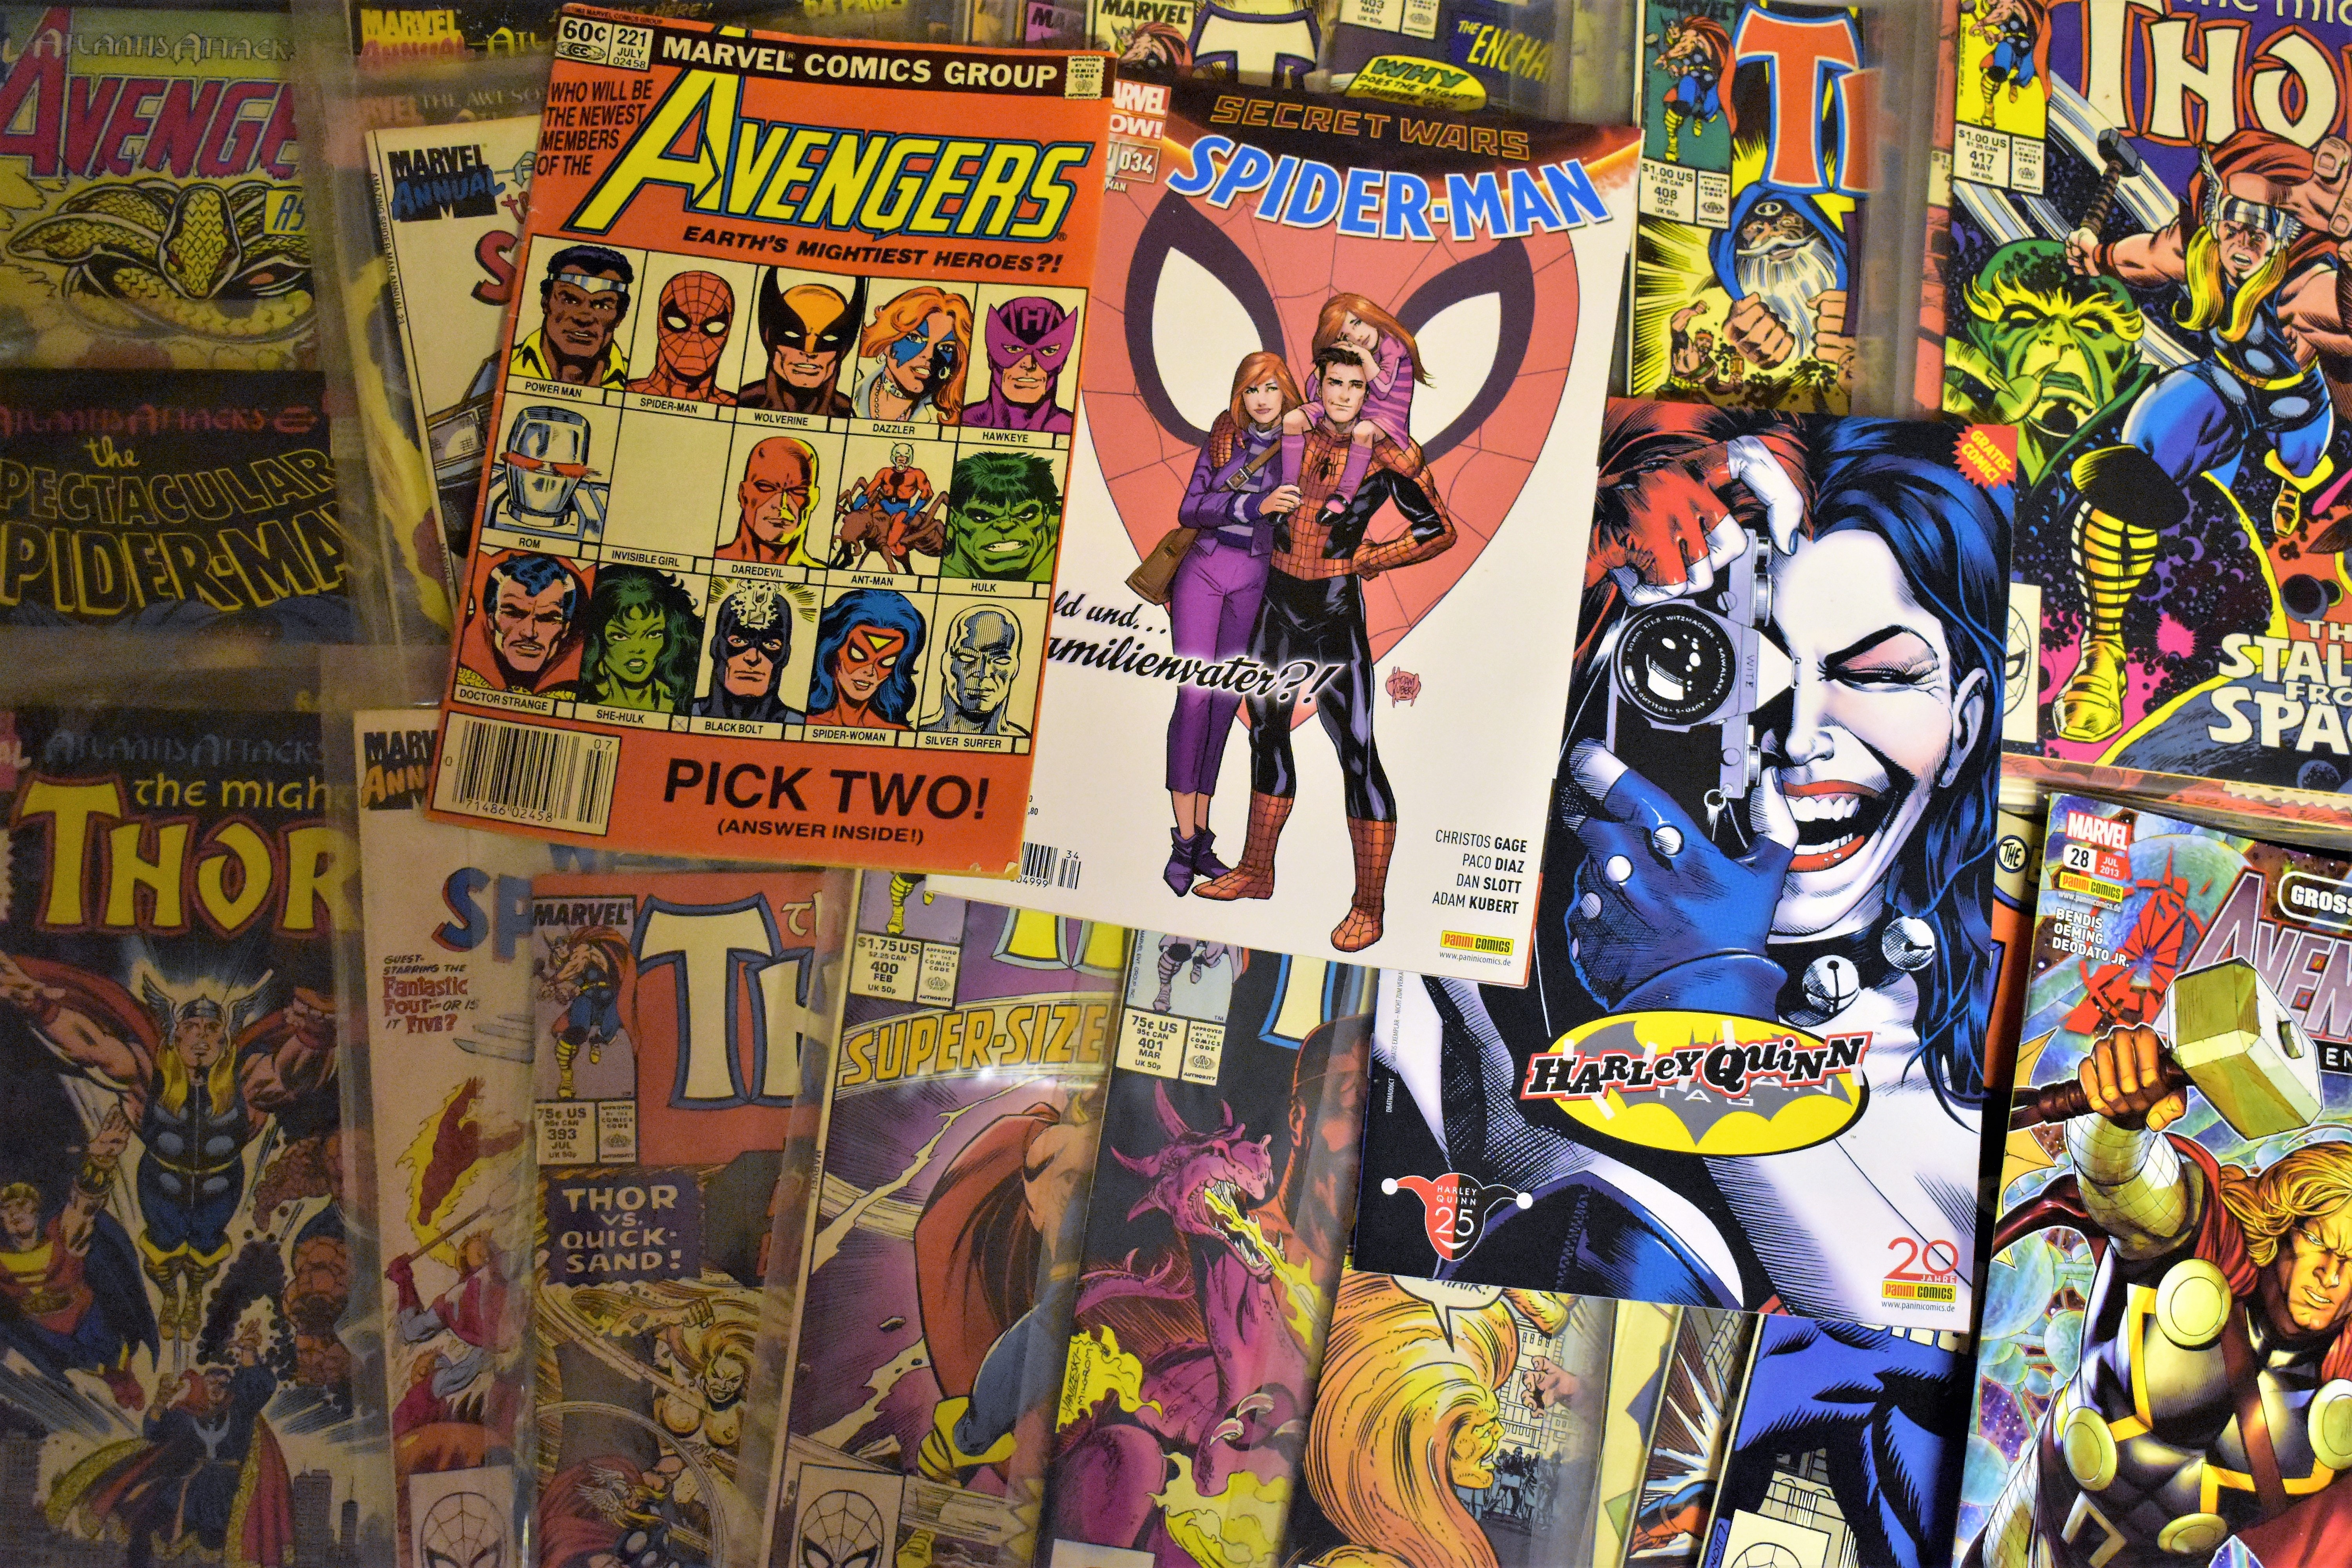 Marvela komiksy - niezwykłe historie superbohaterów